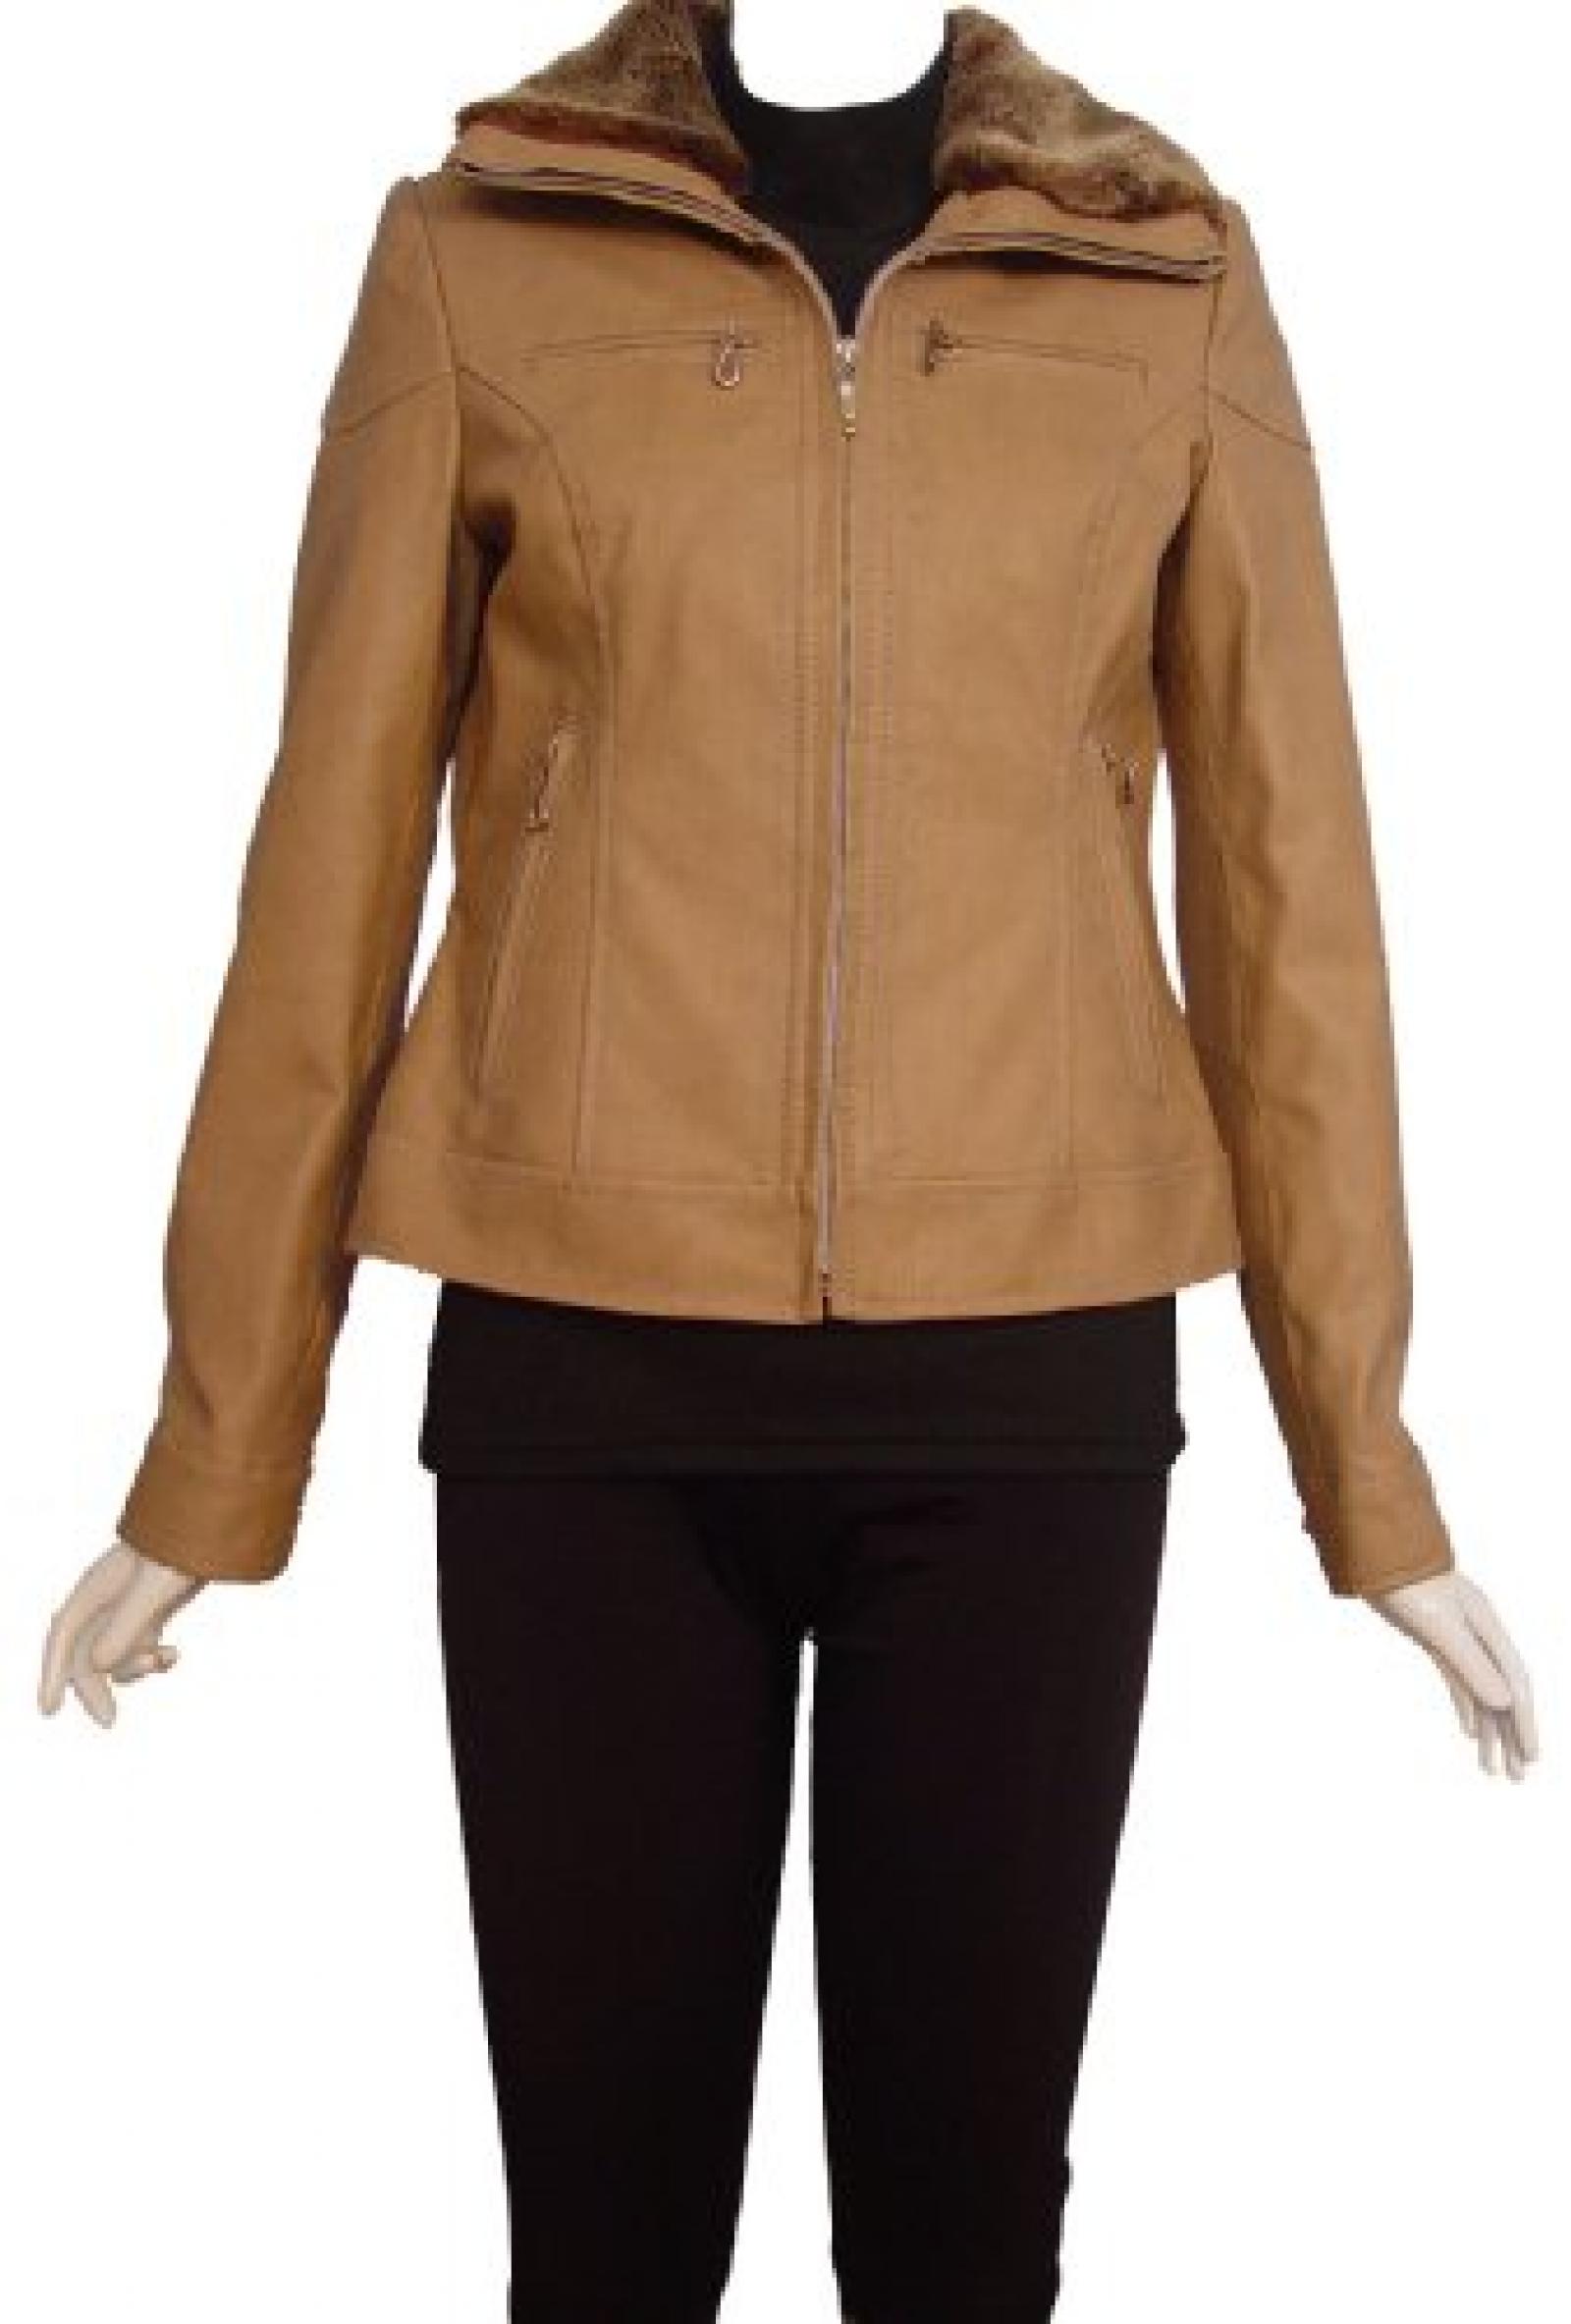 Nettailor Women 4088 Lambskin Leather Casual Jacket Faux Fur Collar 